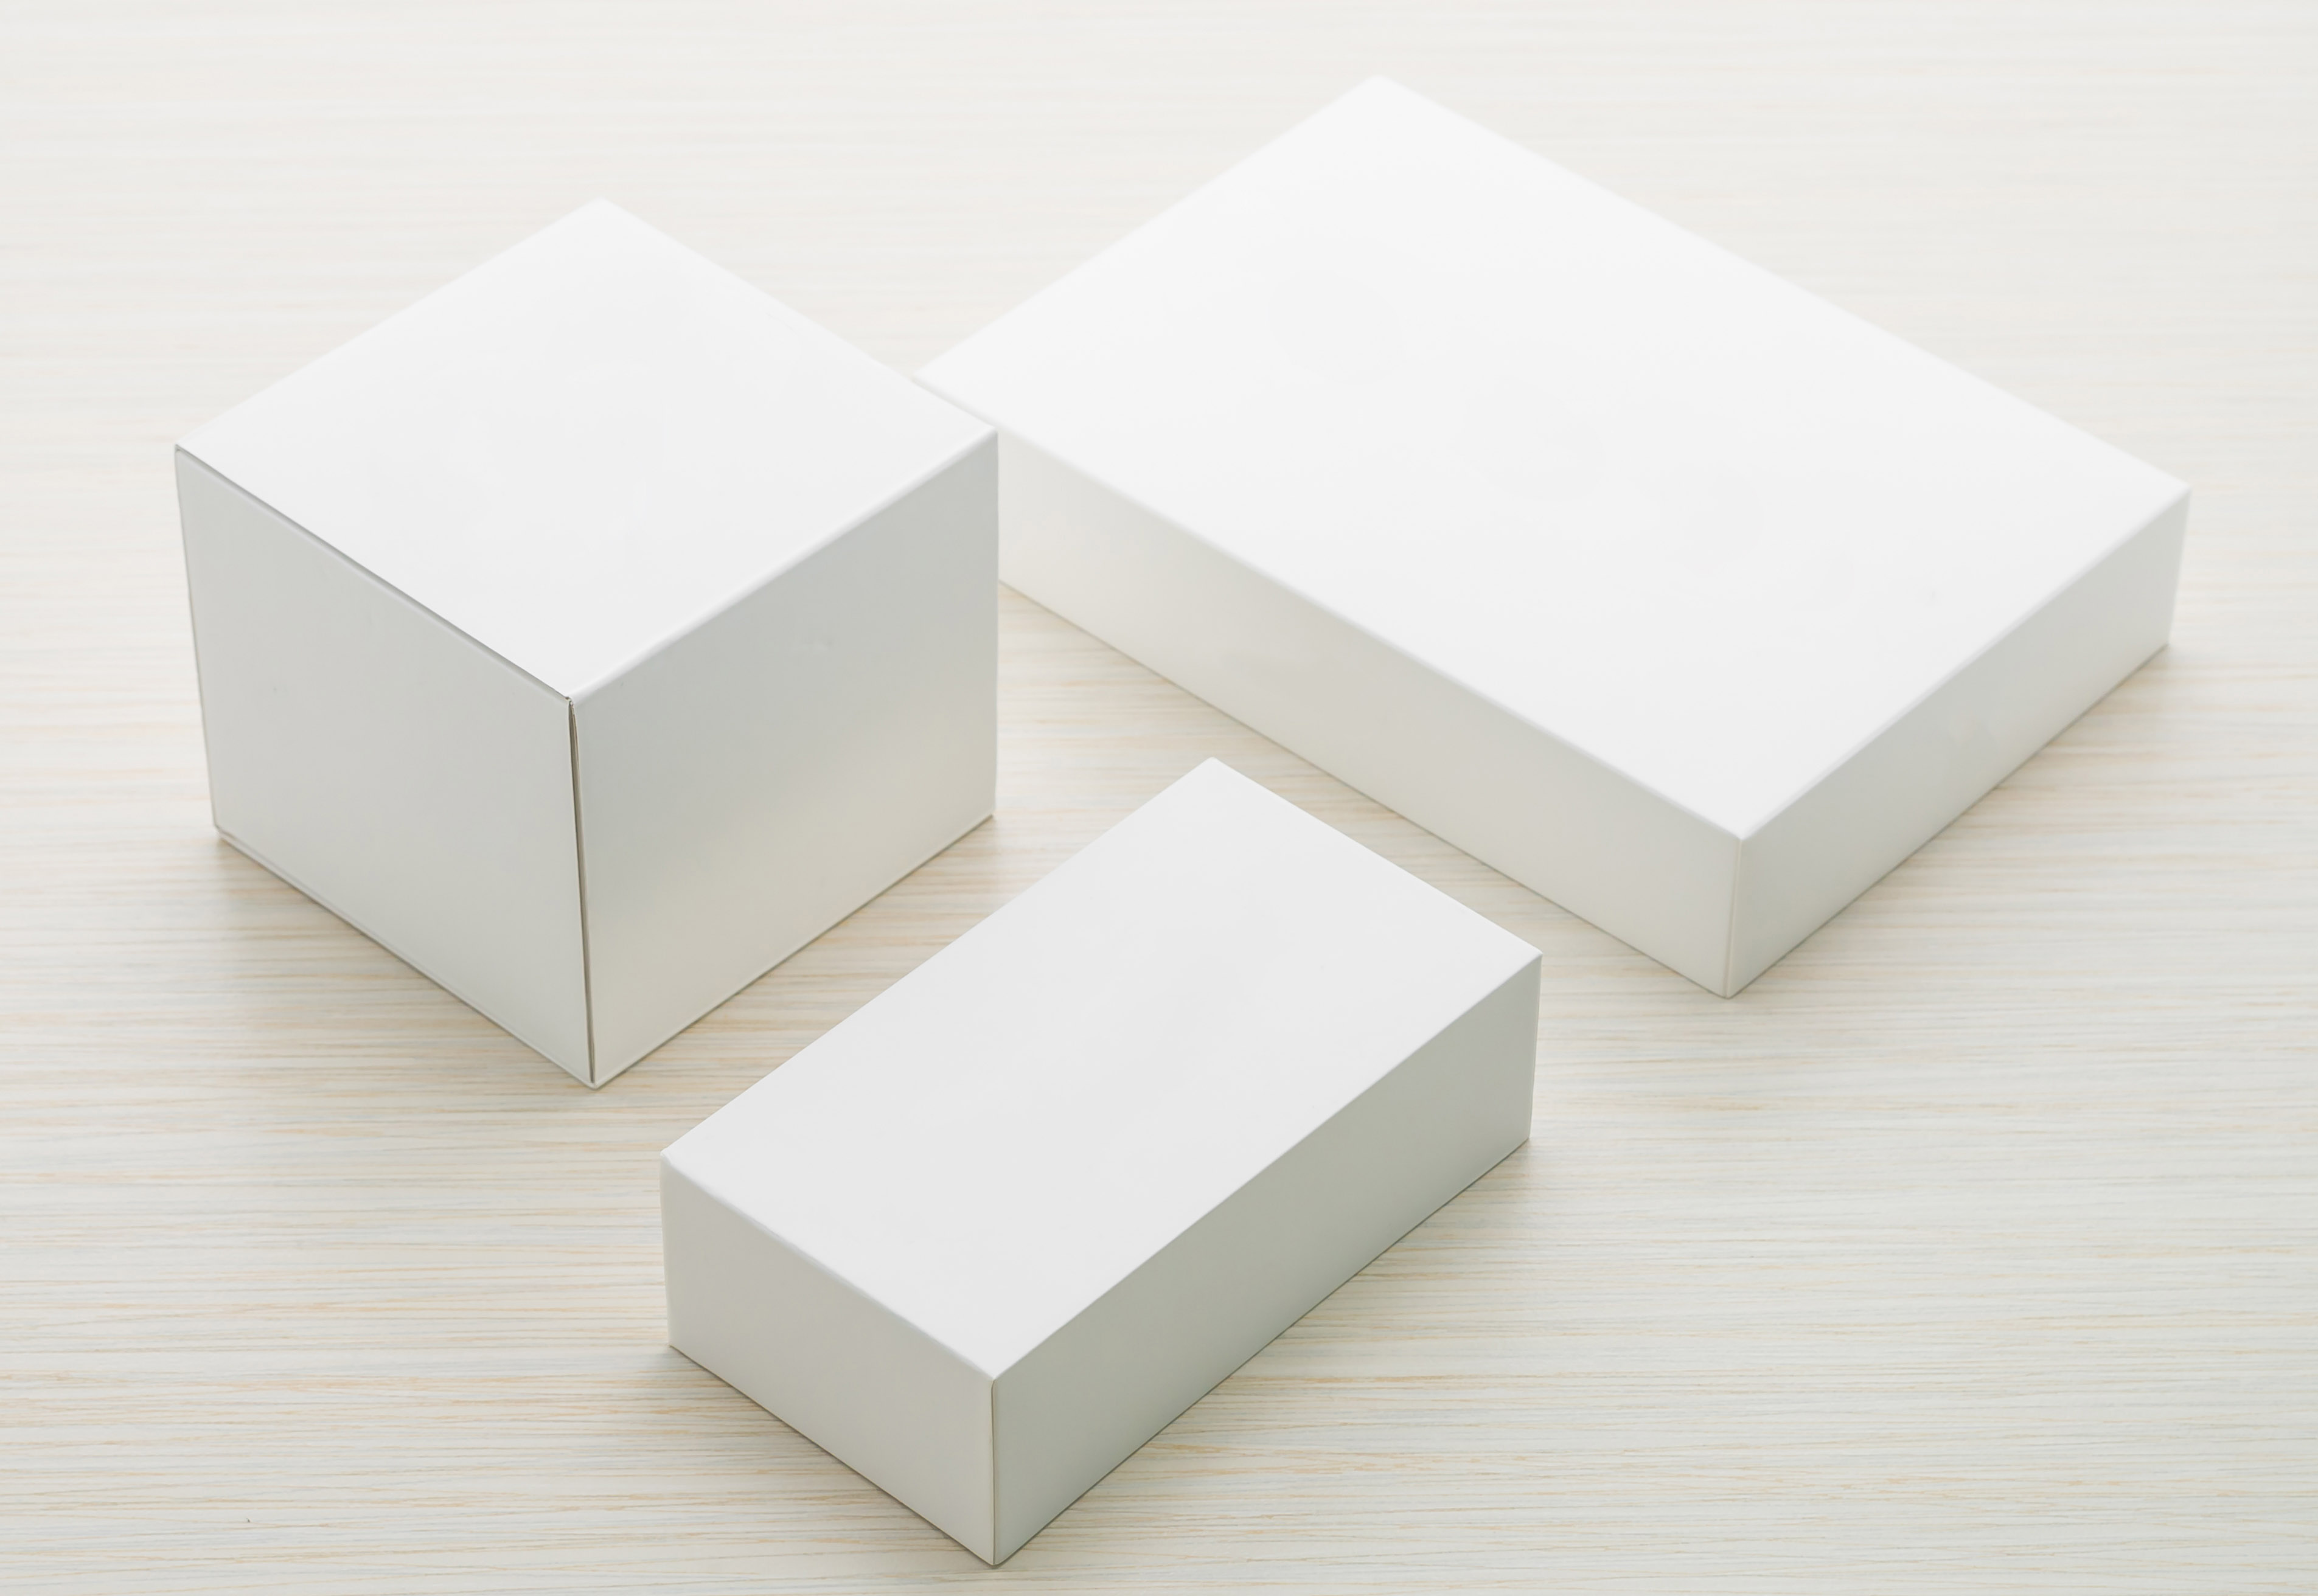 Ravishing Custom Product Boxes to Take Product Game to Next Level